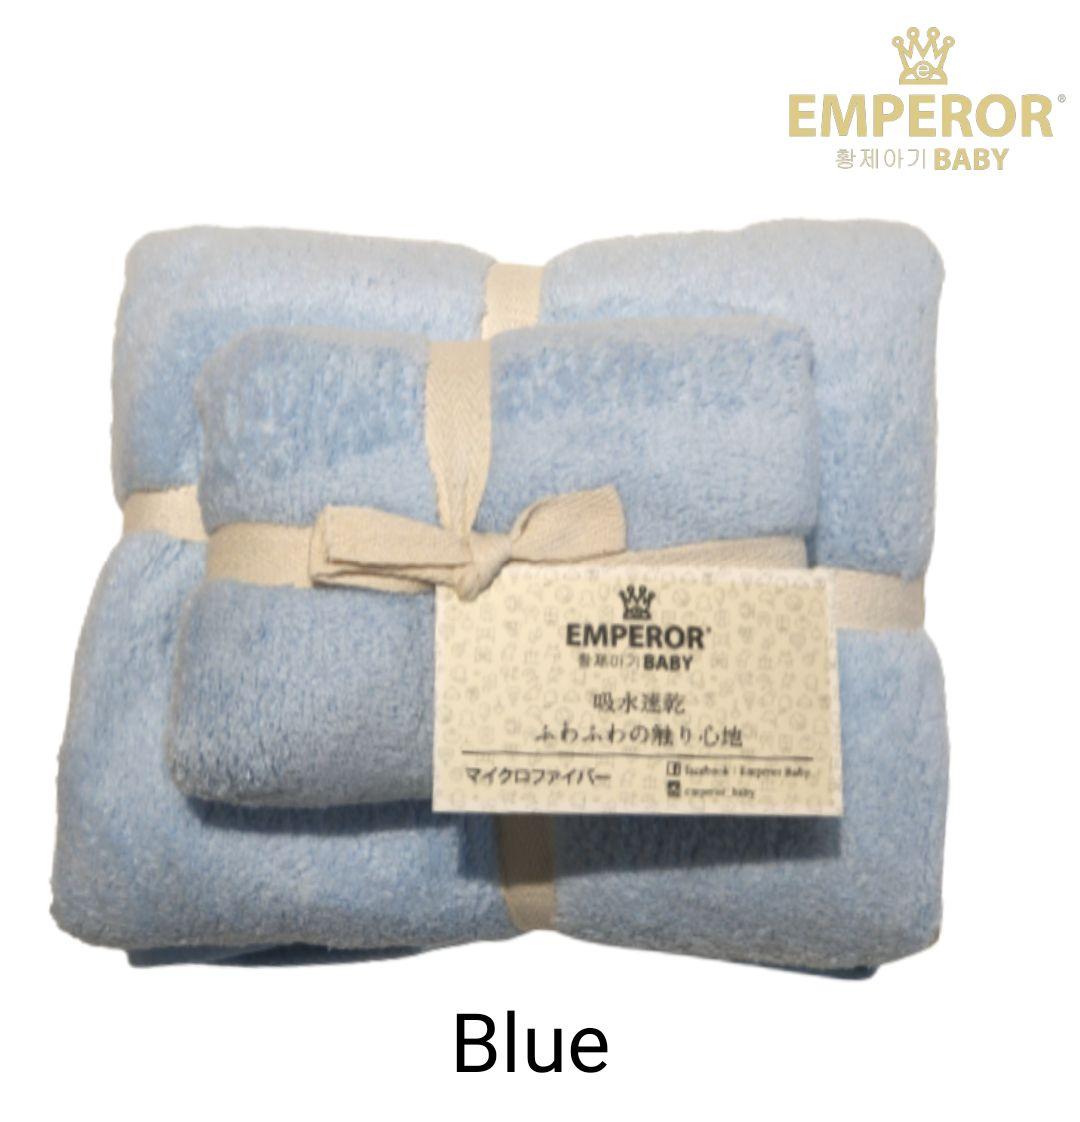 Emperor Baby Baby Towel Set